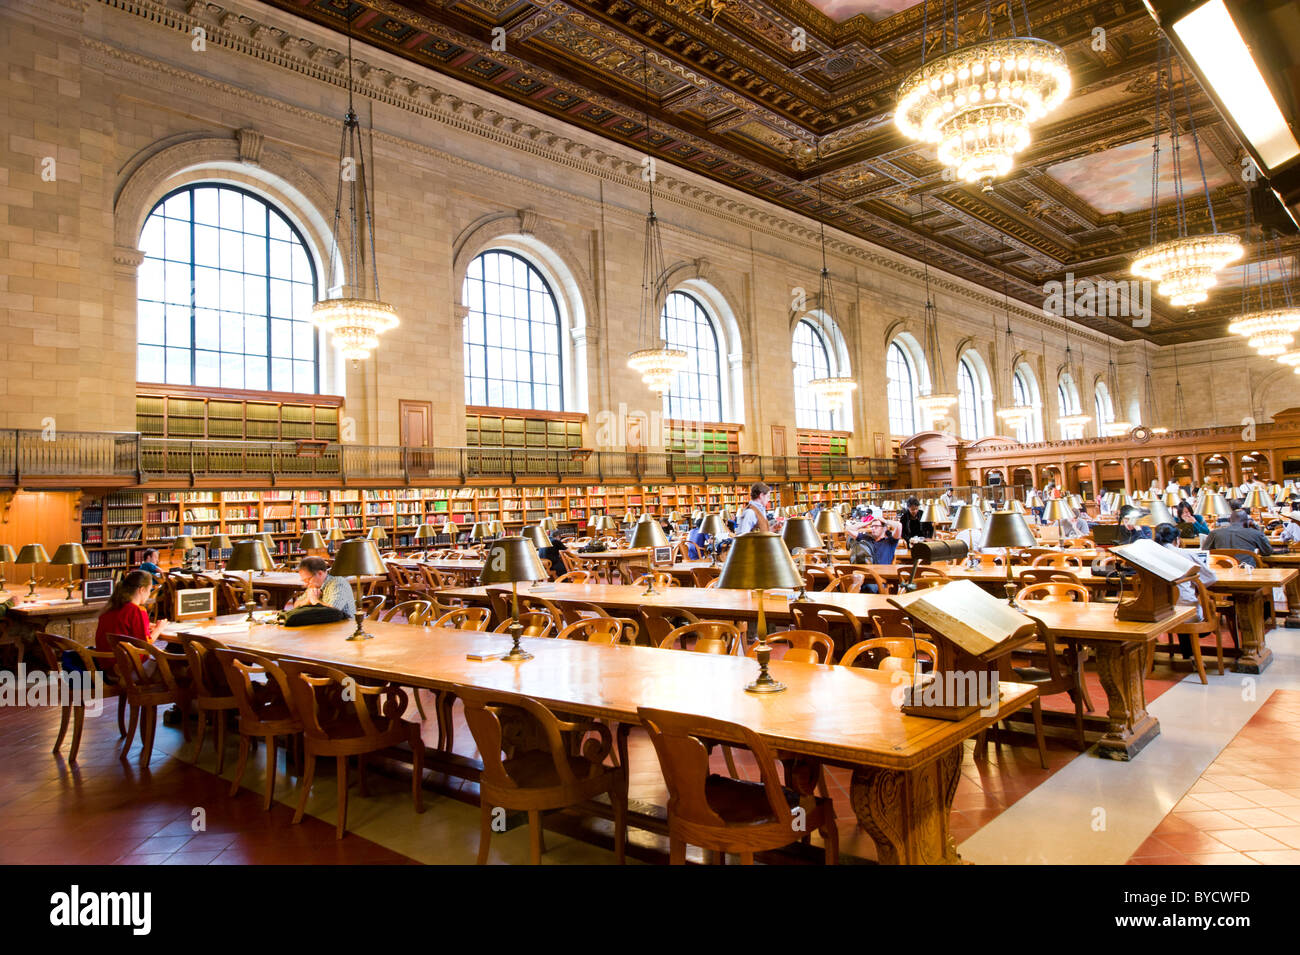 La Bibliothèque publique de New York, New York City, États-Unis d'Amérique Banque D'Images